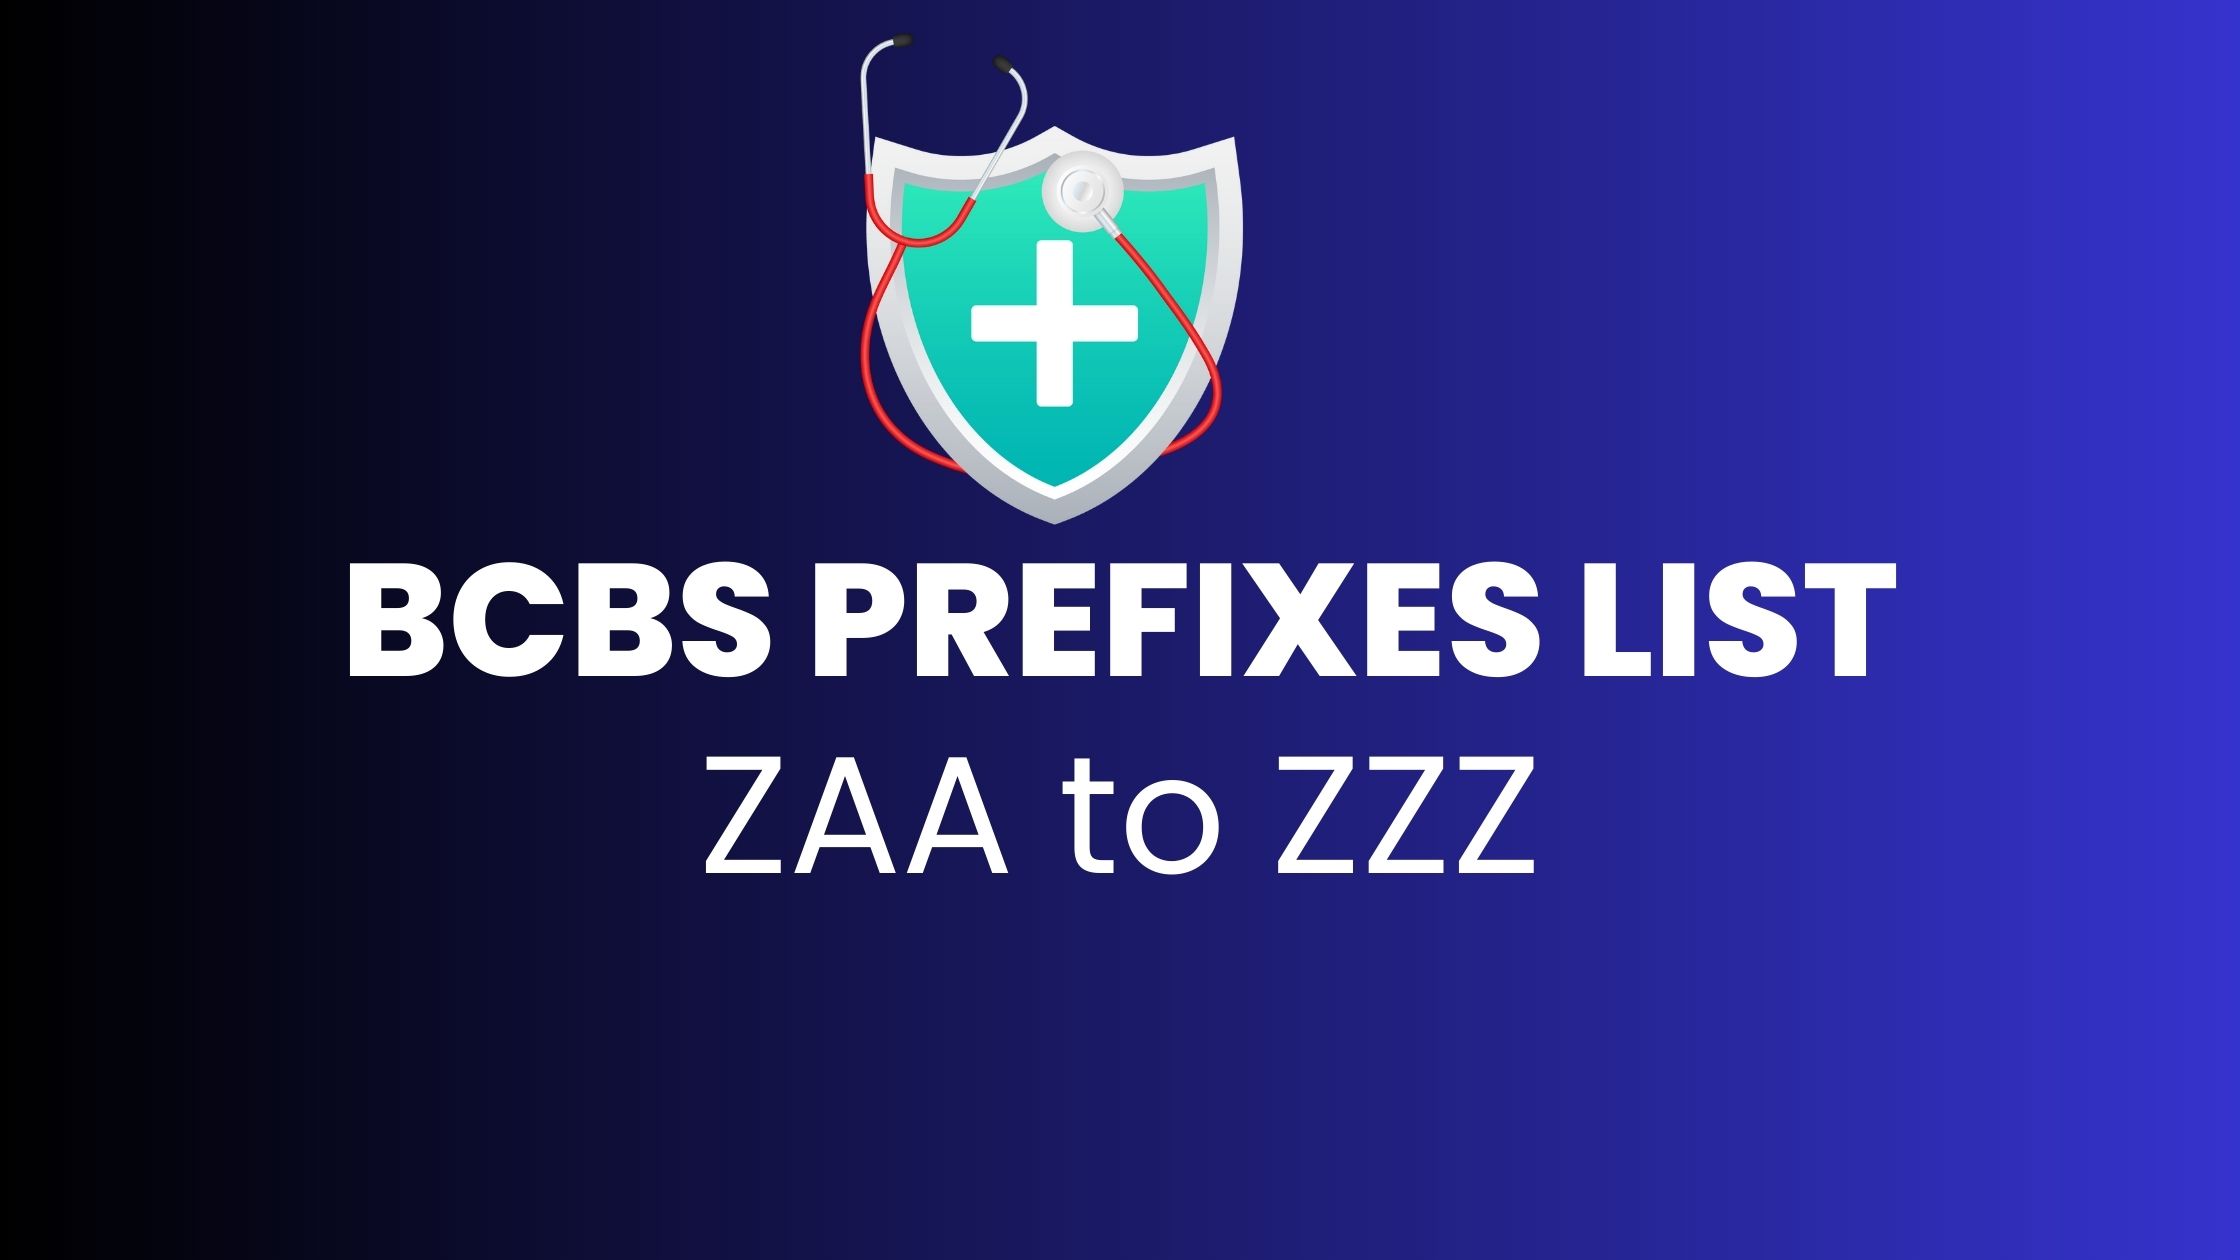 BCBS prefix ZAA to ZZZ